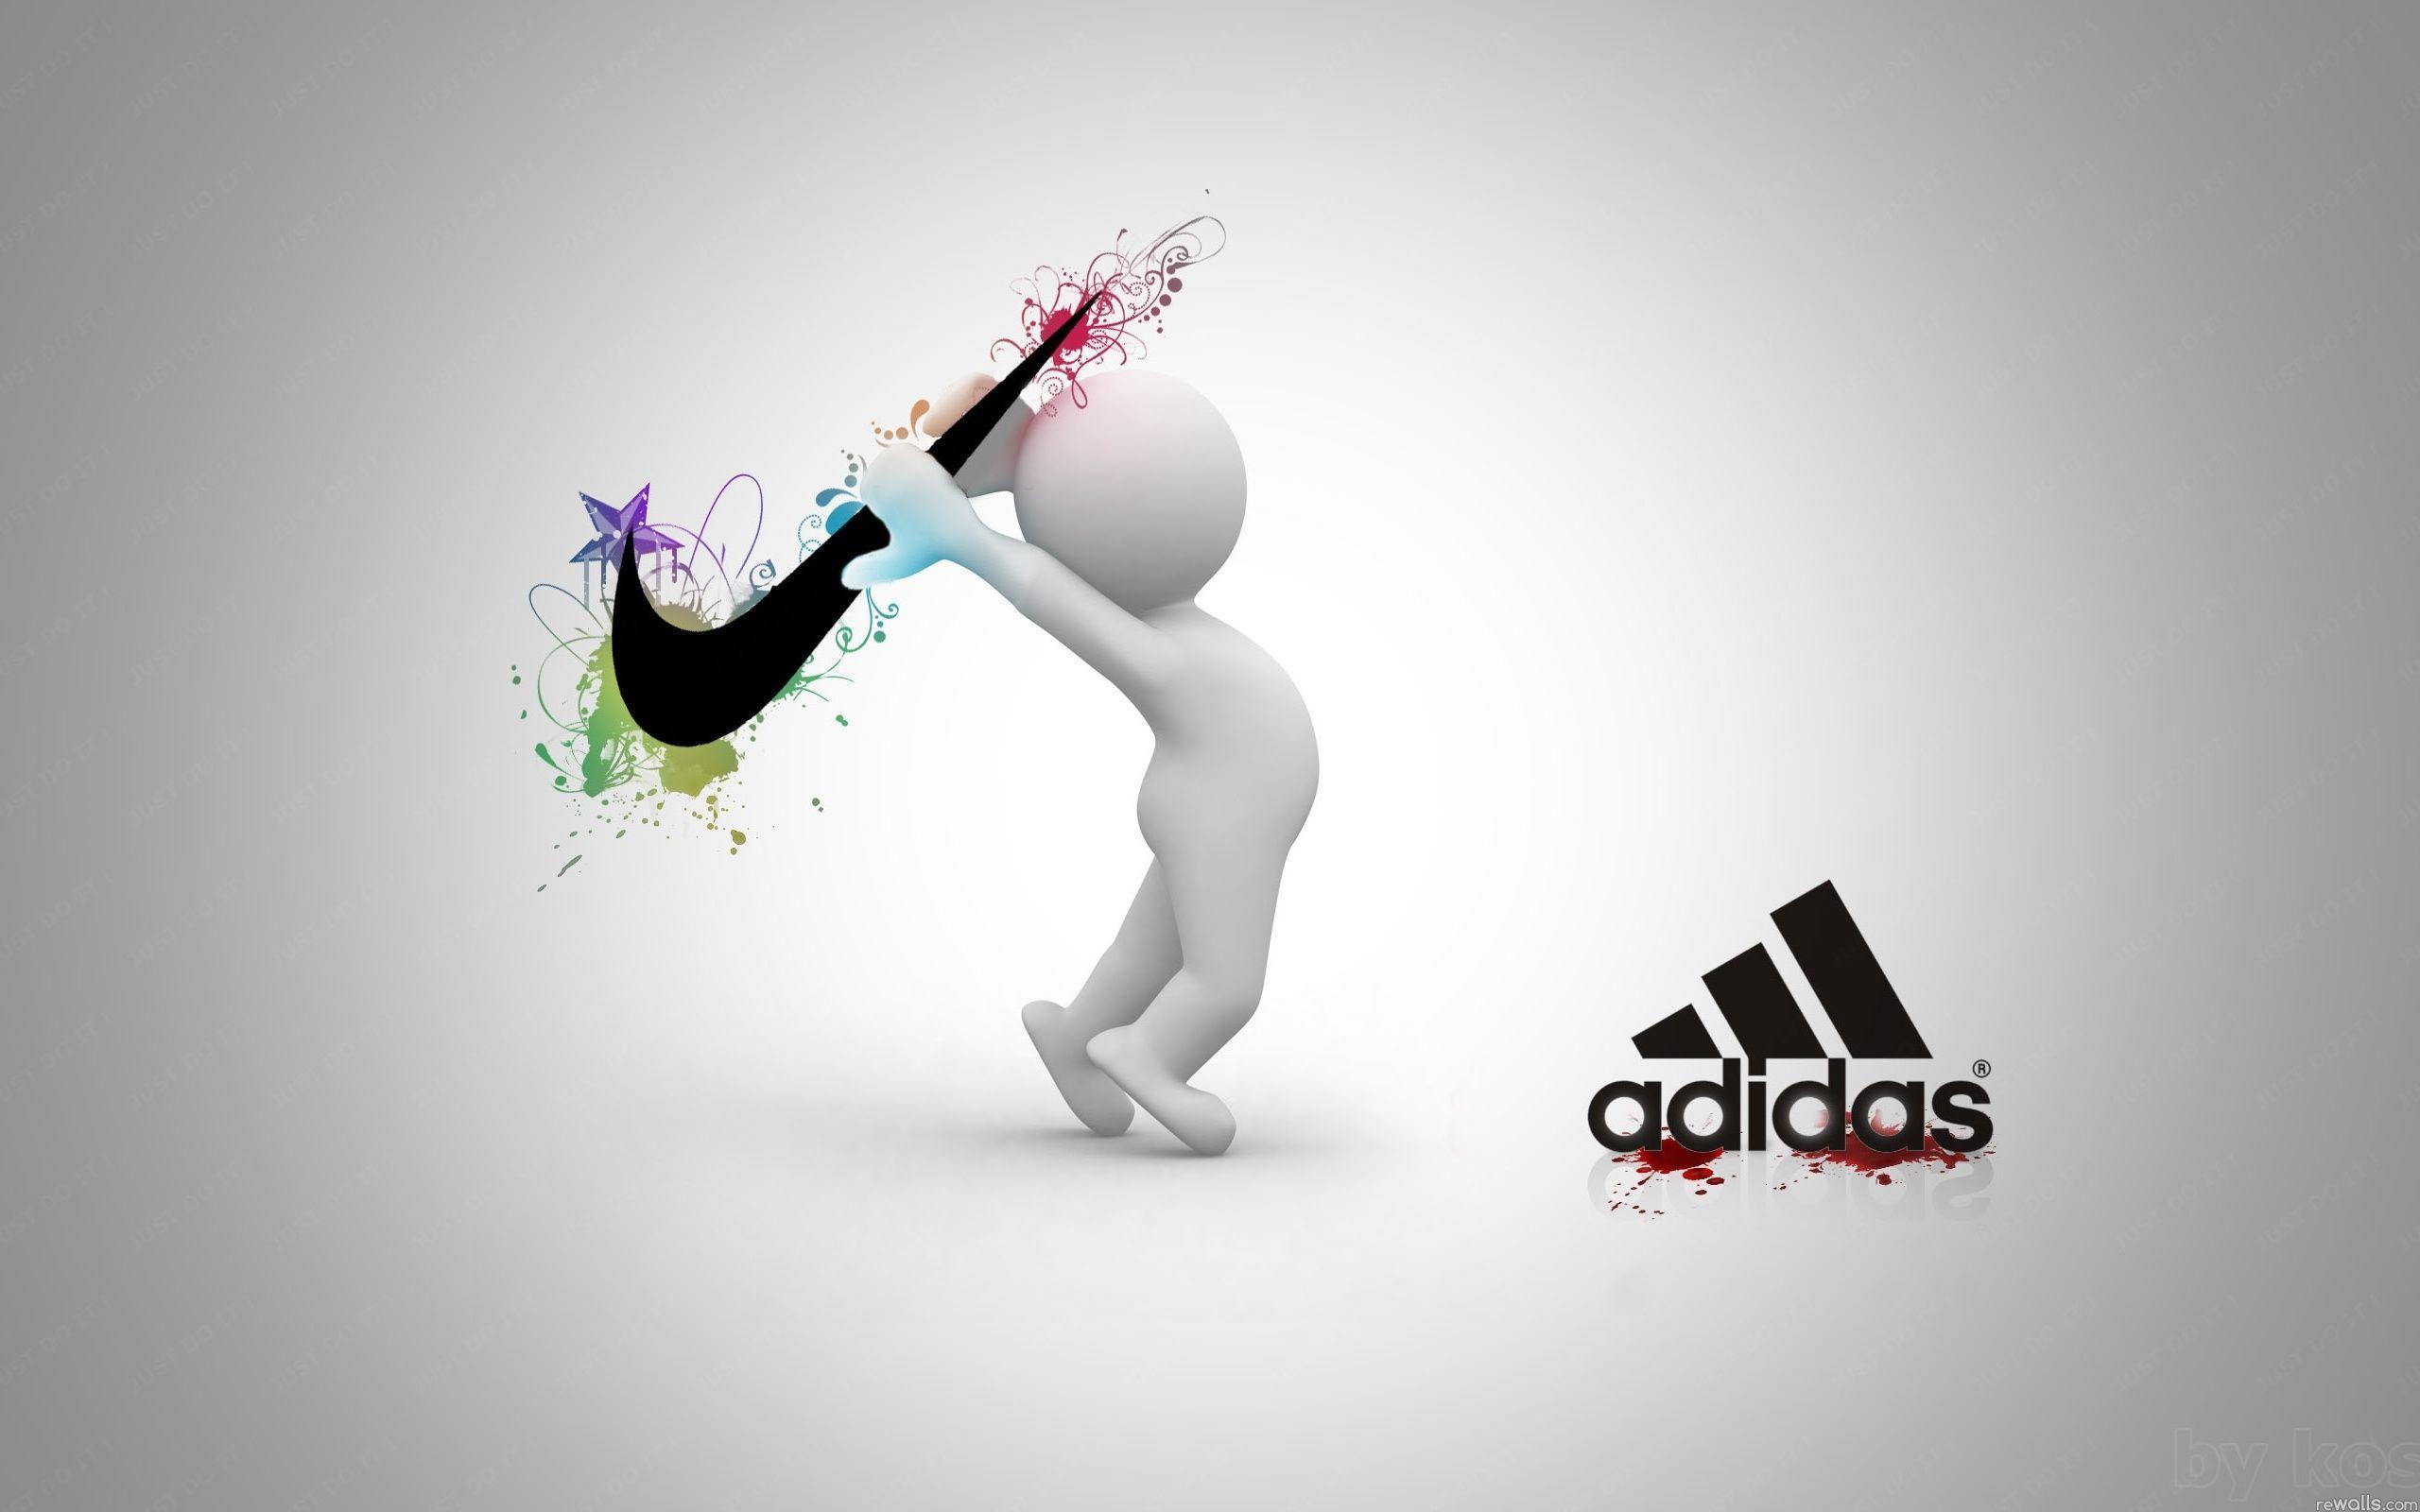 95+] Nike Vs Adidas Wallpapers - WallpaperSafari